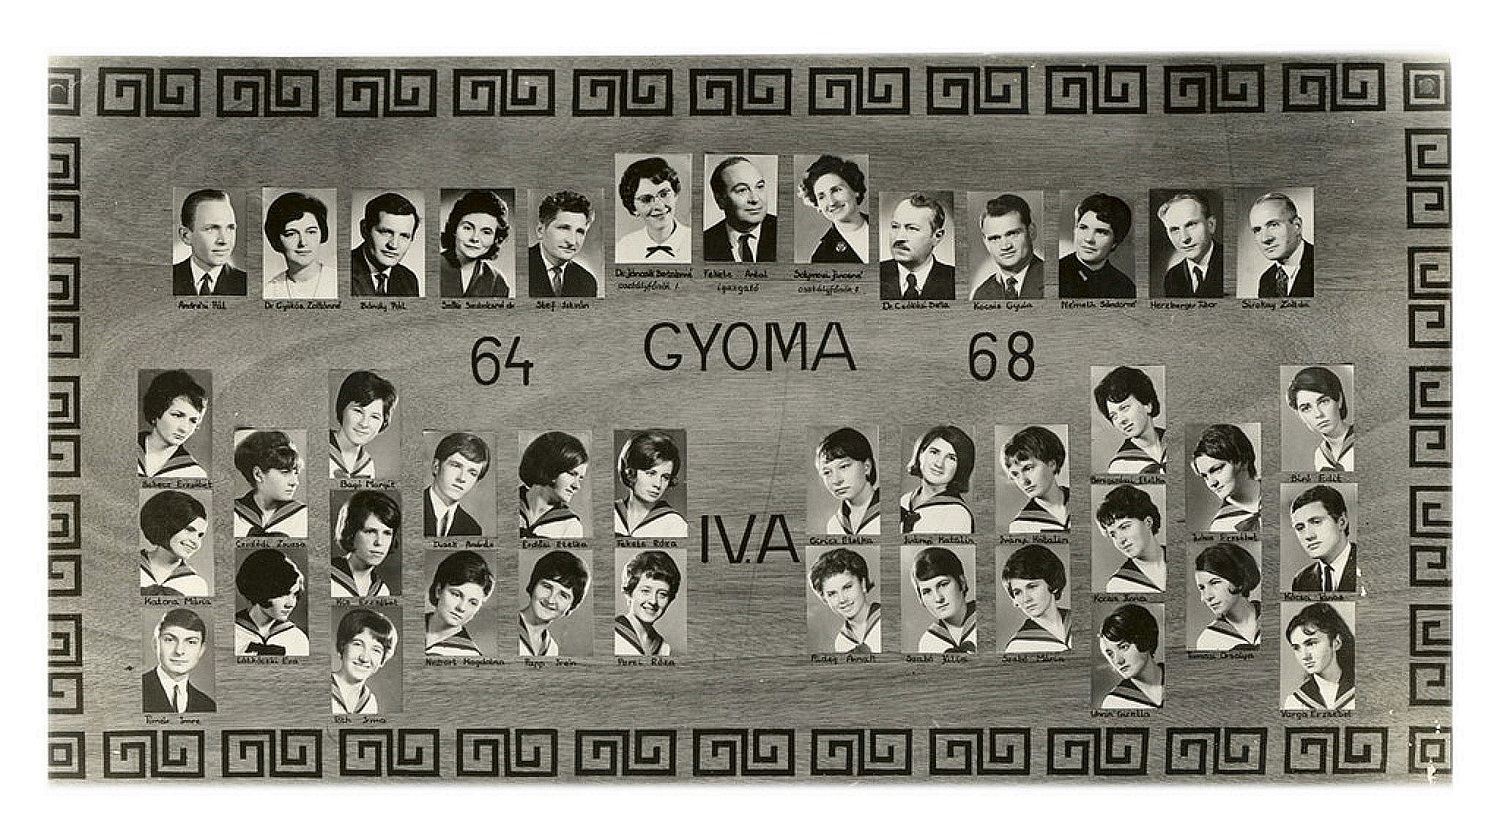 1968 IV. A